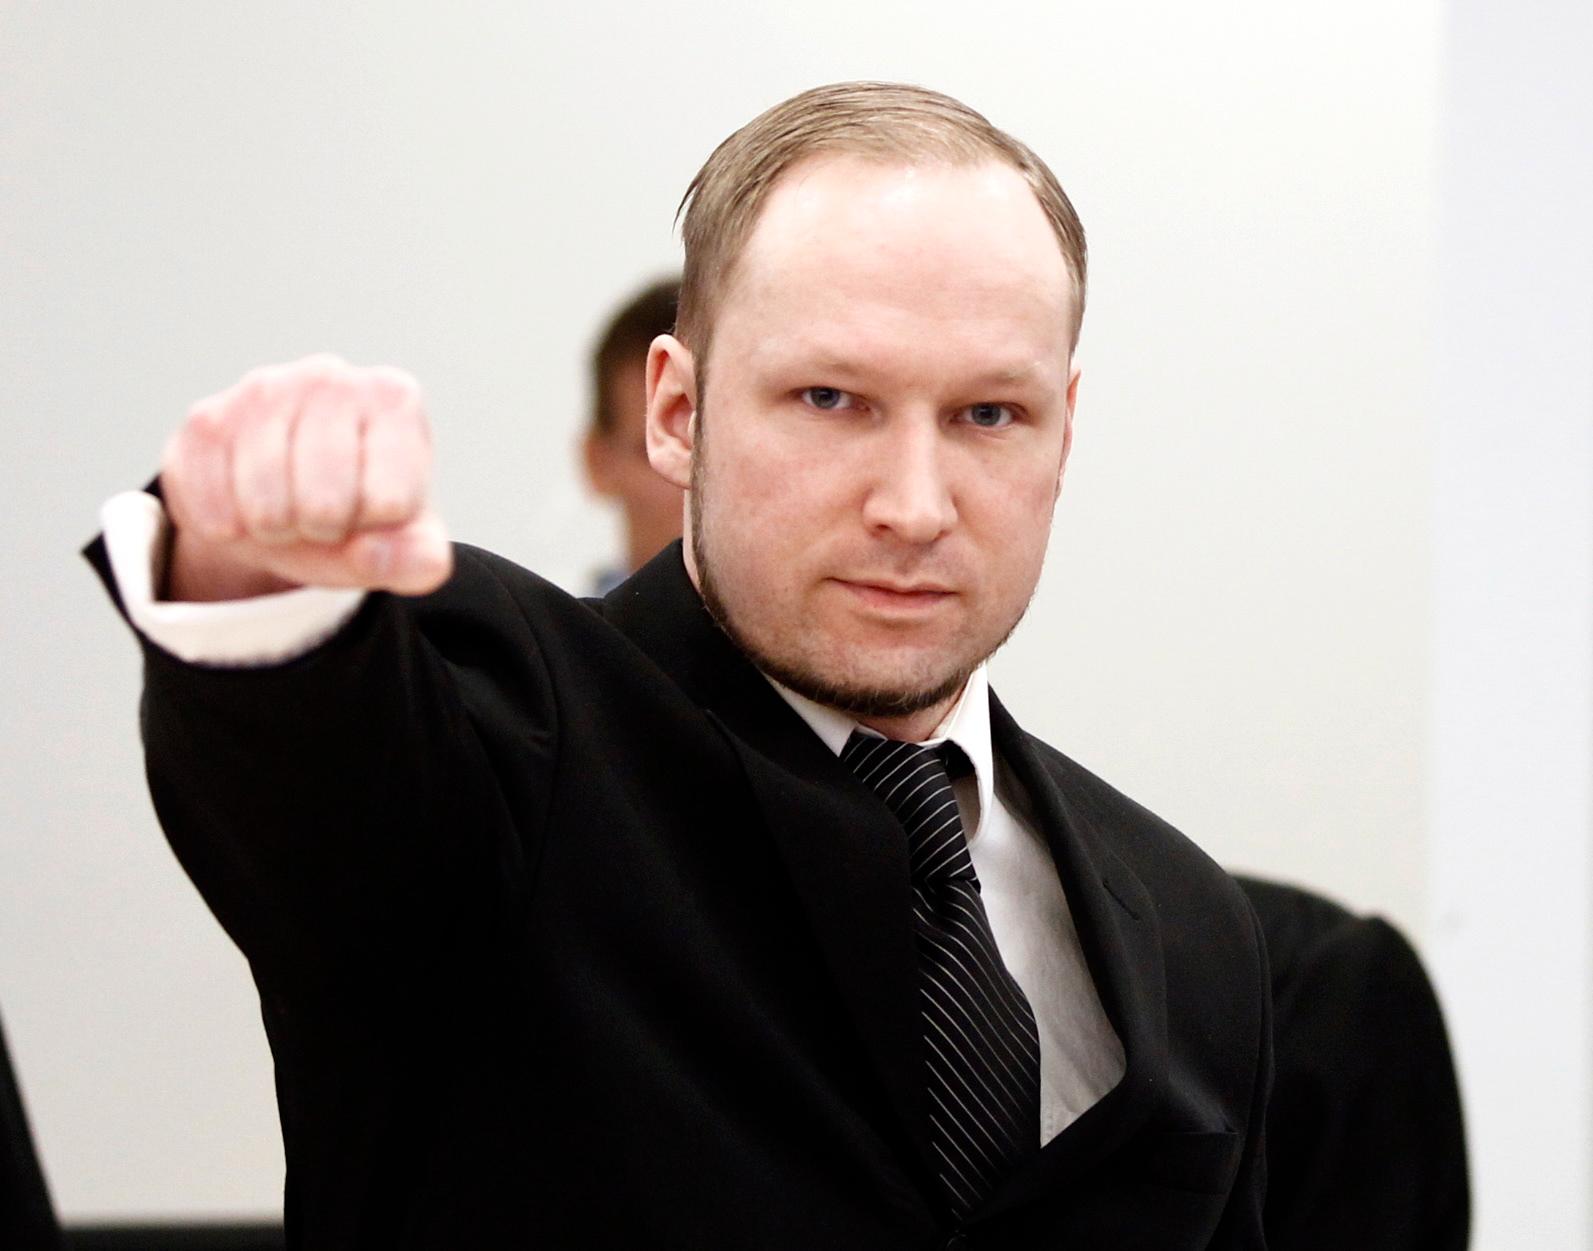 Under de första dagarna av rättegången gjorde Breivik en högerextrem hälsning när han kom in i rättssalen. Senare slutade han med det efter att de anhöriga tagit illa vid sig.